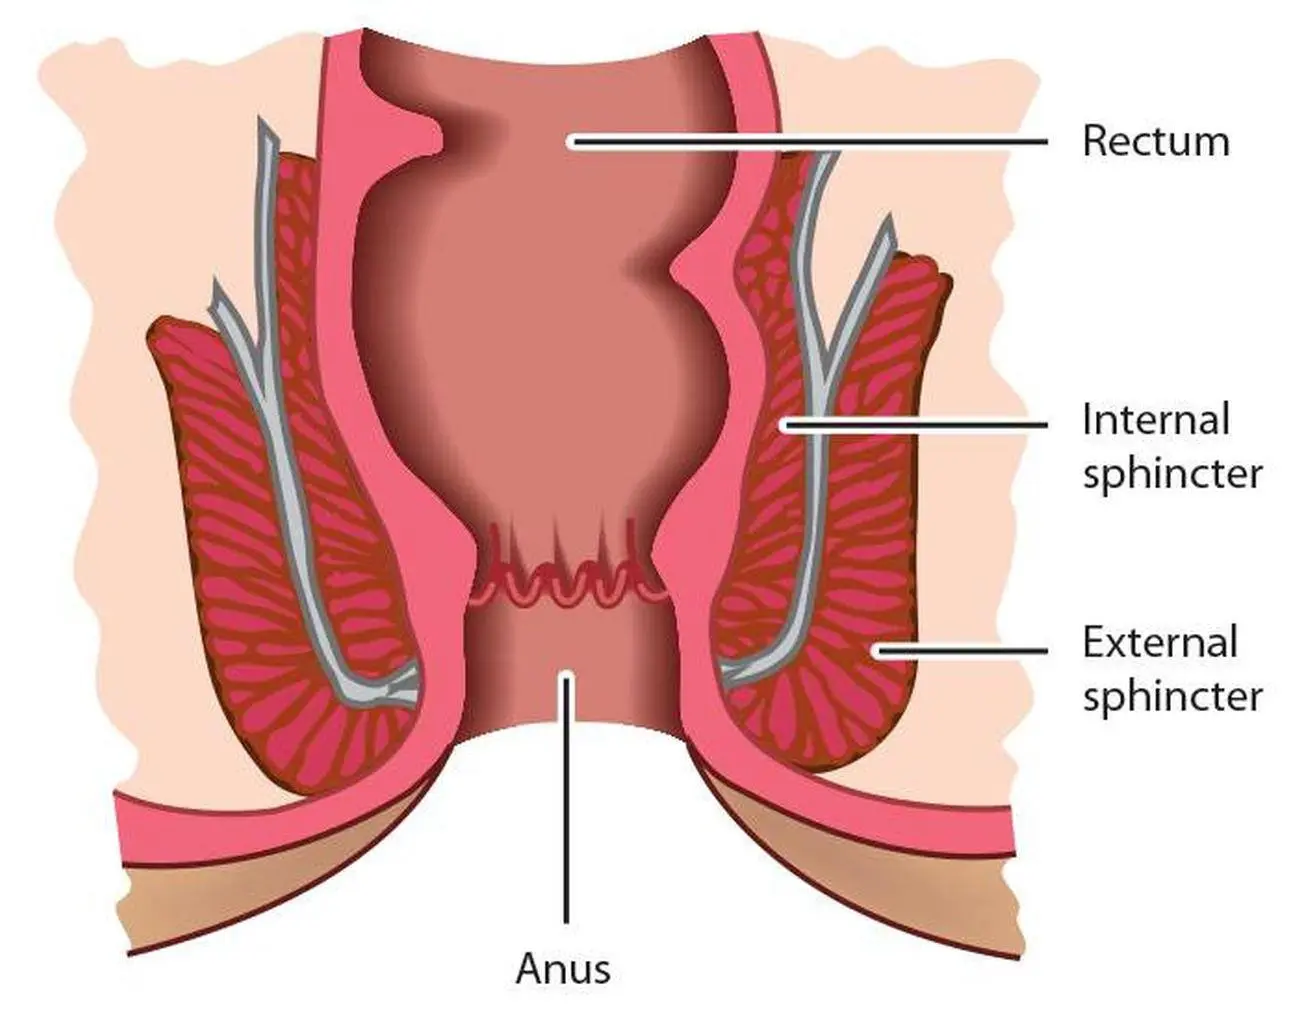 Anatomi bagian anus. Source: healthiack.com